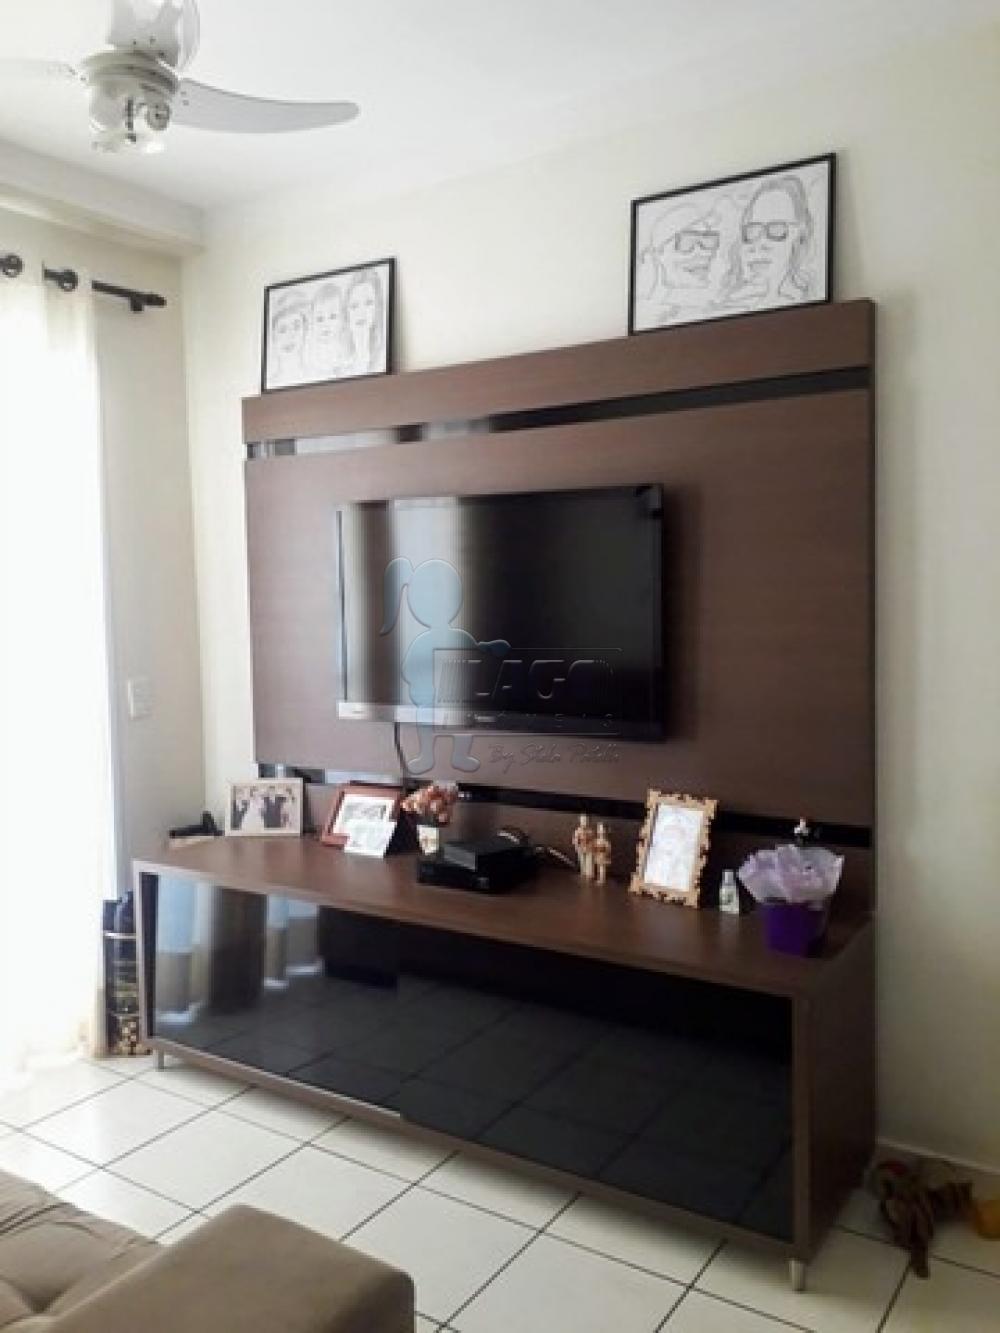 Comprar Apartamentos / Padrão em Ribeirão Preto R$ 265.000,00 - Foto 3